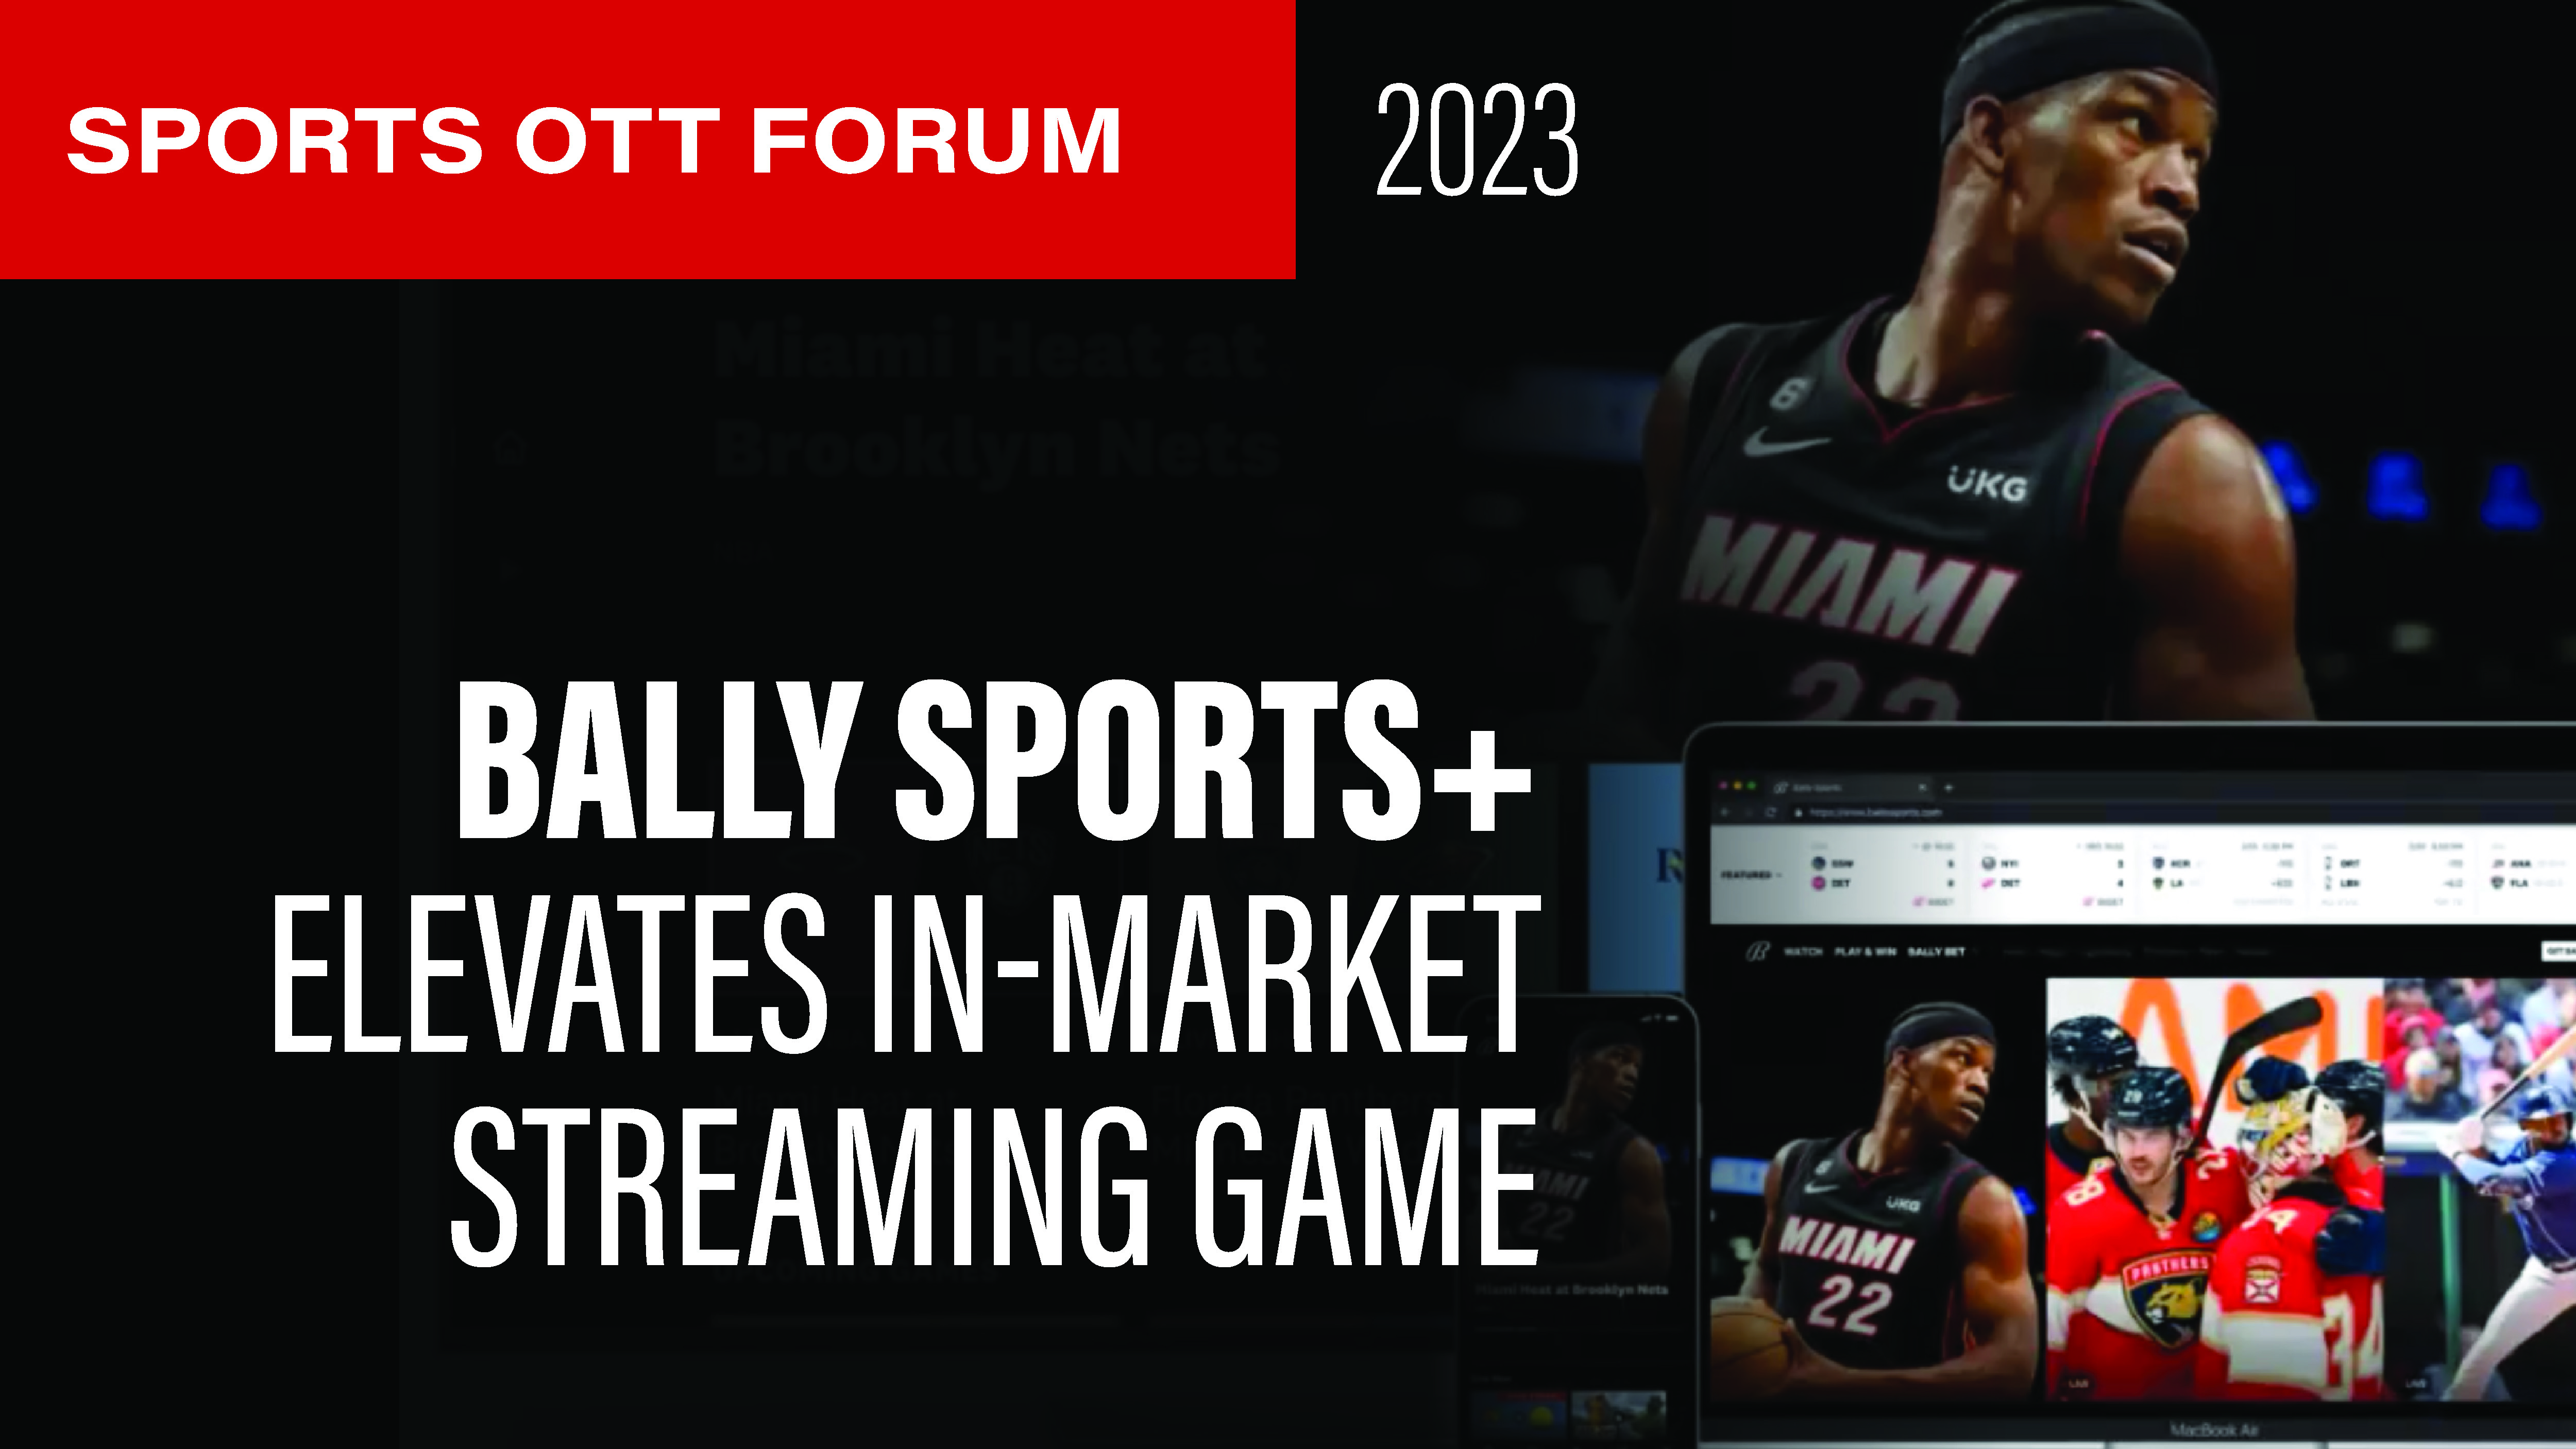 Bally Sports+ Elevates the In-Market Streaming Game Sports OTT Spotlight - SVG Sports OTT Forum 2023